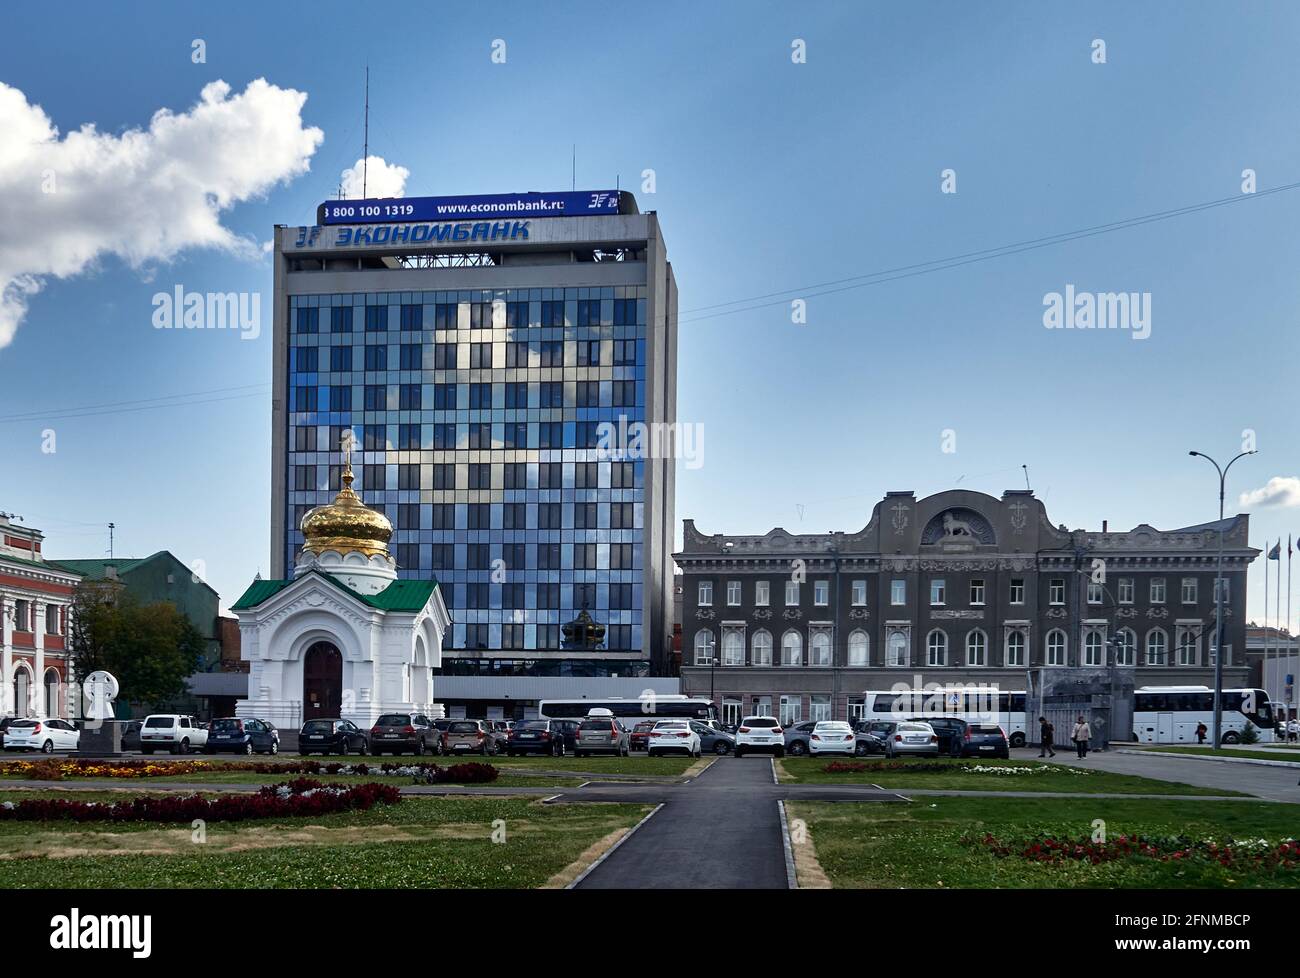 Russia ; Saratov Oblast. La piazza prende il nome perché qui si trova il Teatro dell'Opera e del Balletto. Oltre alla splendida architettura Foto Stock